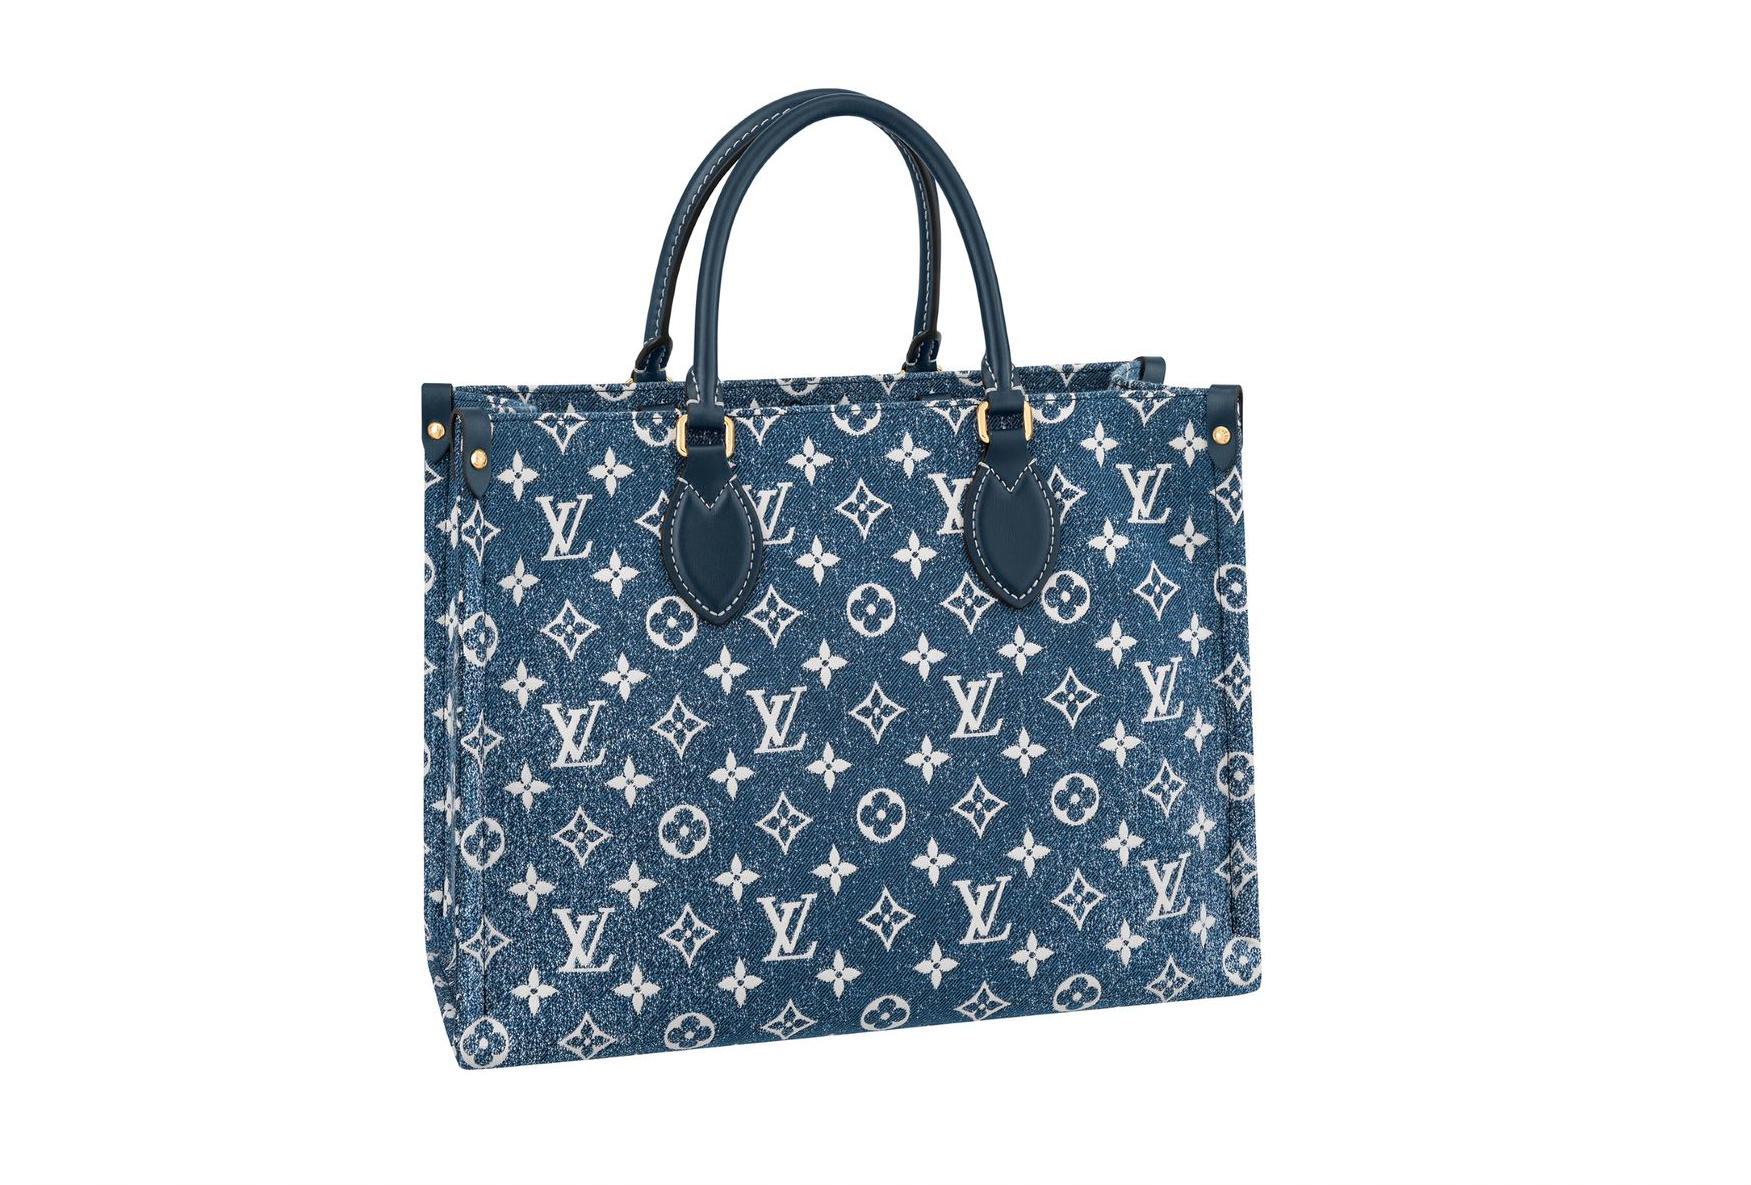 Tết Âm lịch cận kề, Louis Vuitton đánh úp giới mộ điệu khi thay áo 3 chiếc túi đình đám - Ảnh 7.